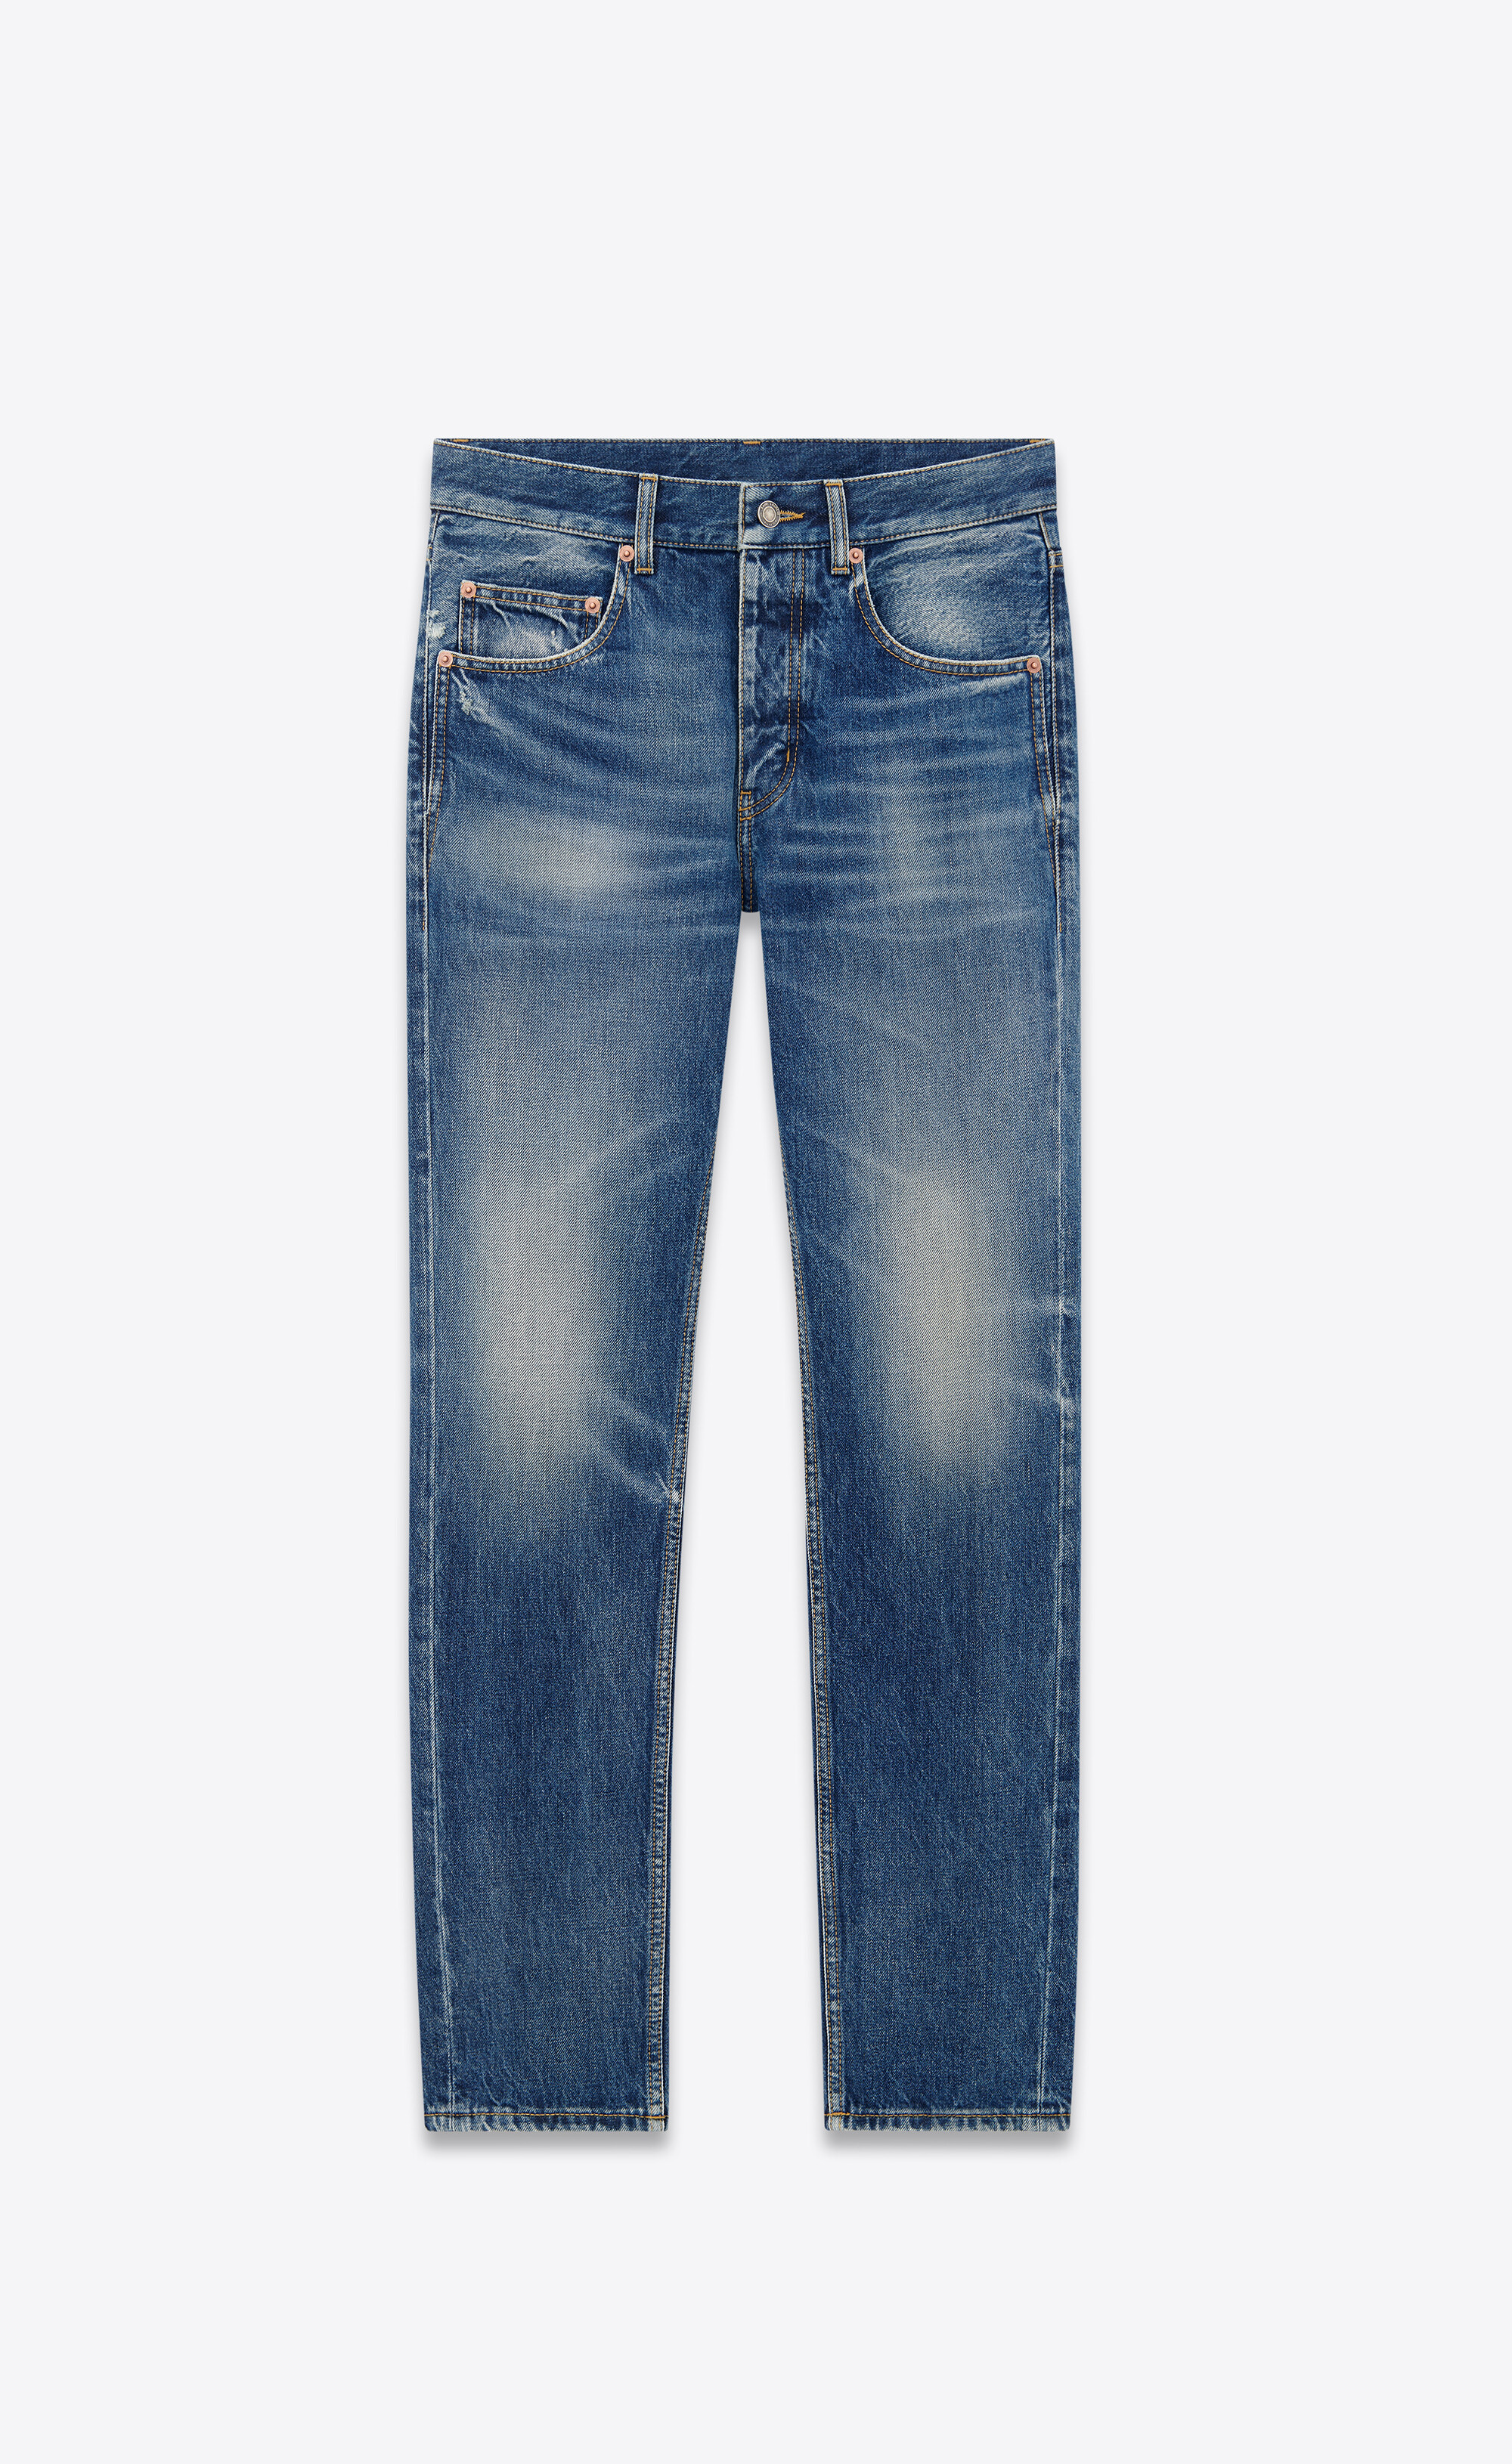 Baggy jeans in DEAUVILLE beach blue denim | Saint Laurent | YSL.com